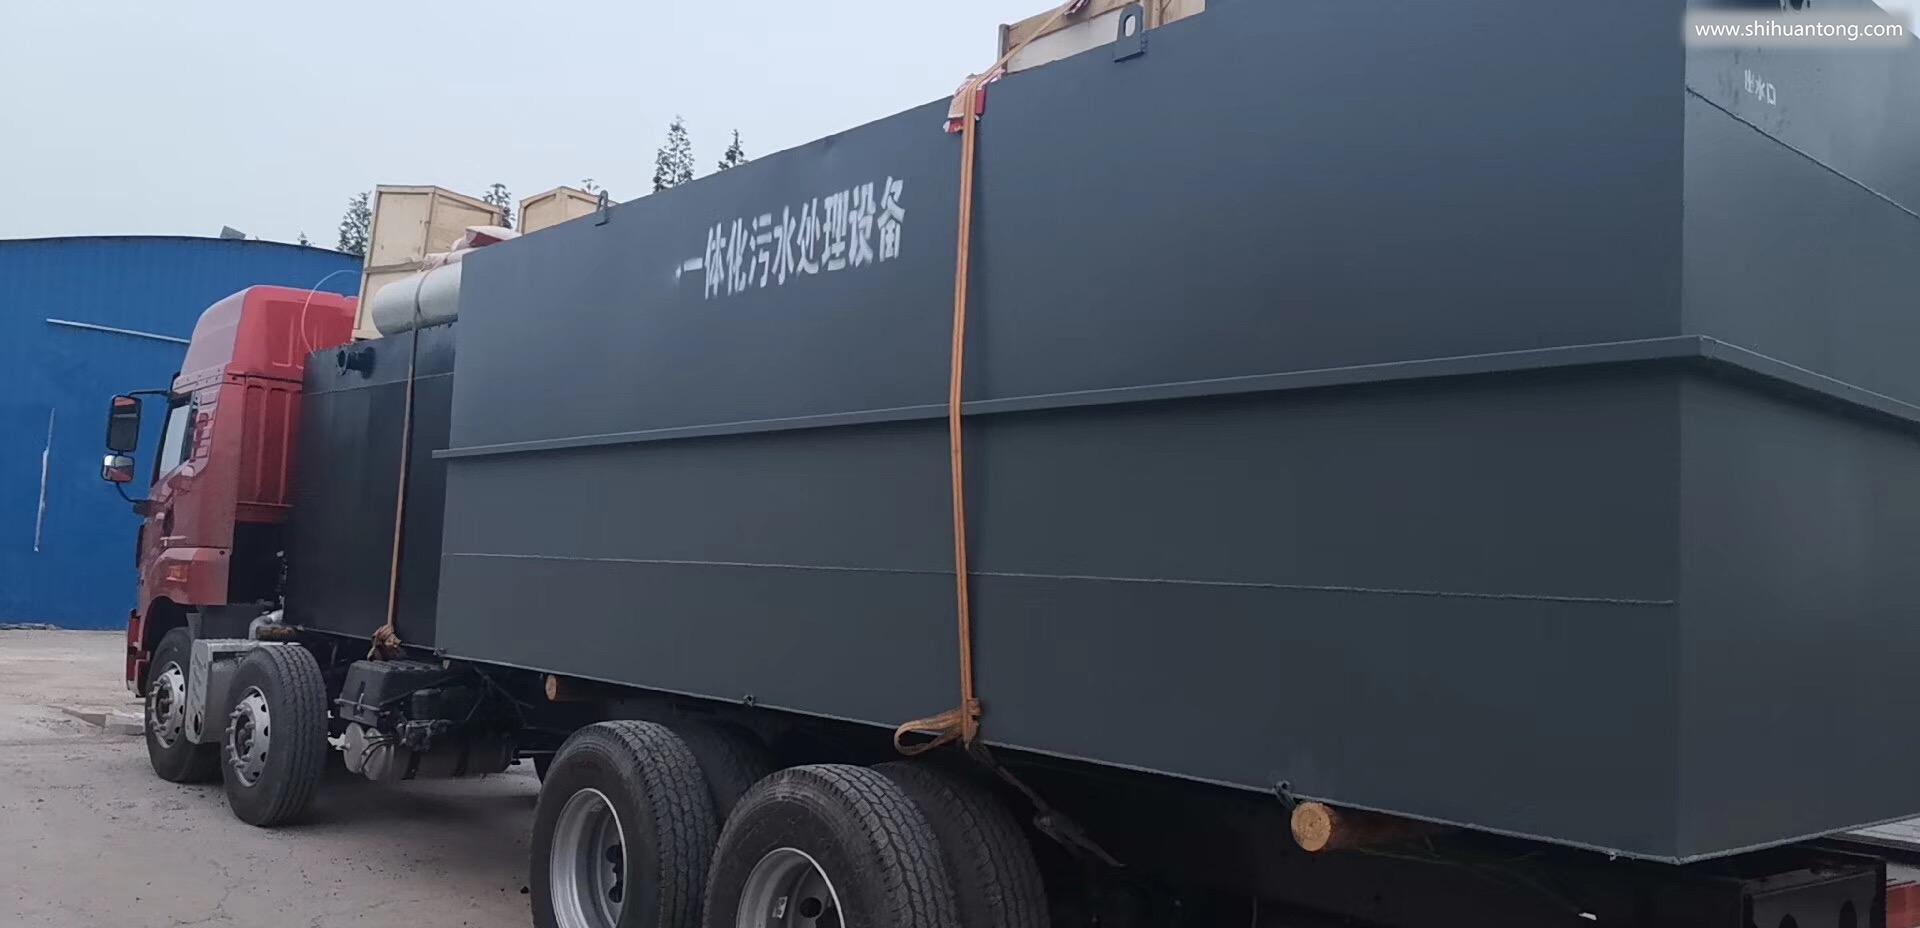 安徽阜阳溶气气浮机生产厂家